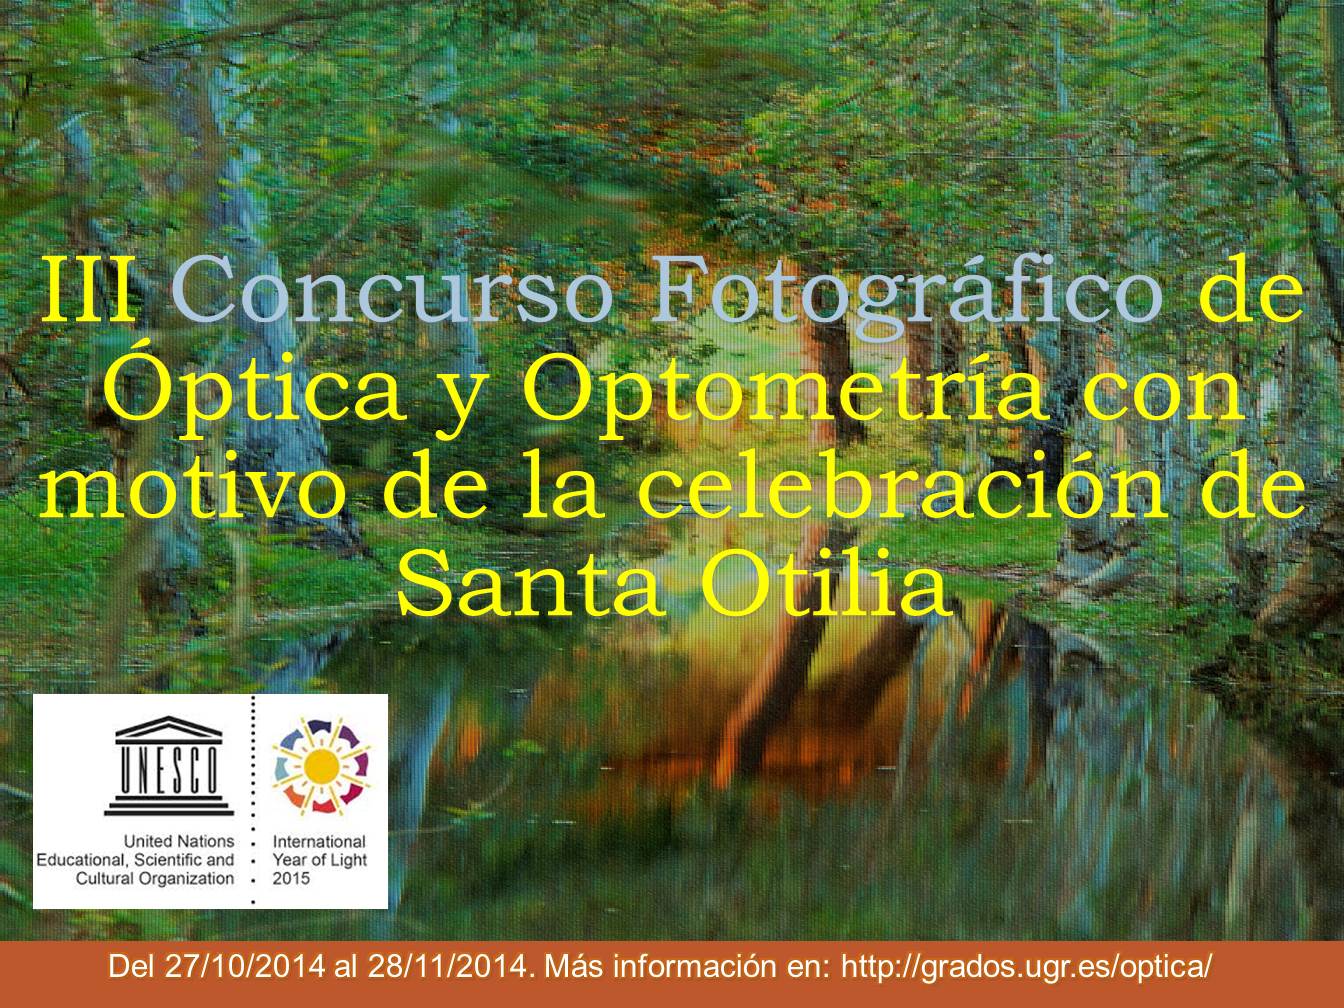 III Concurso Fotográfico de Óptica y Optometría con motivo de la celebración de Santa Otilia